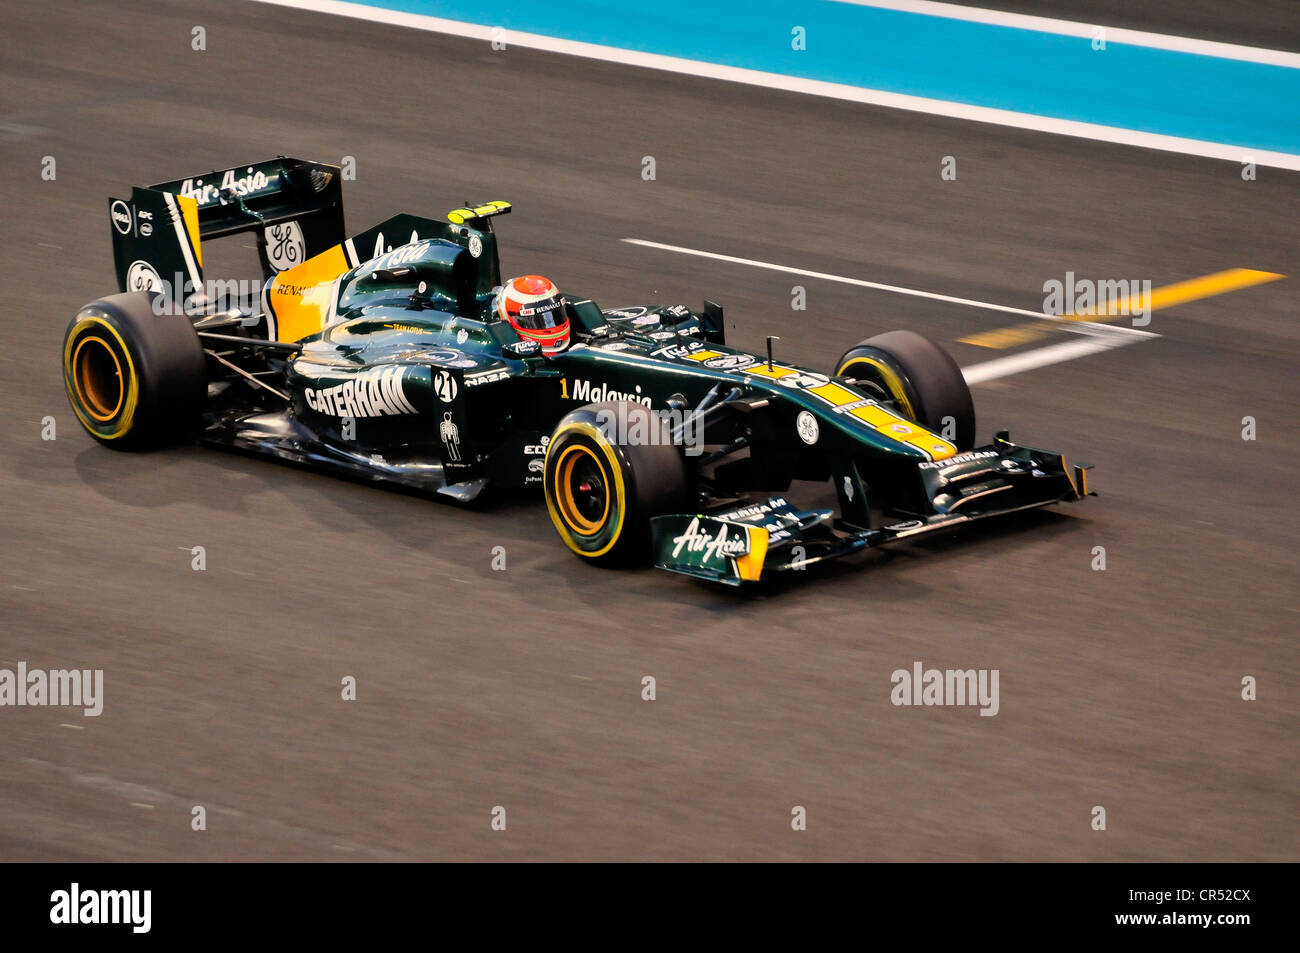 Formel 1 Rennwagen von Jarno Trulli, Italien, Startnummer 21, von Team Lotus-Renault auf der Rennstrecke Yas Marina Circuit Stockfoto